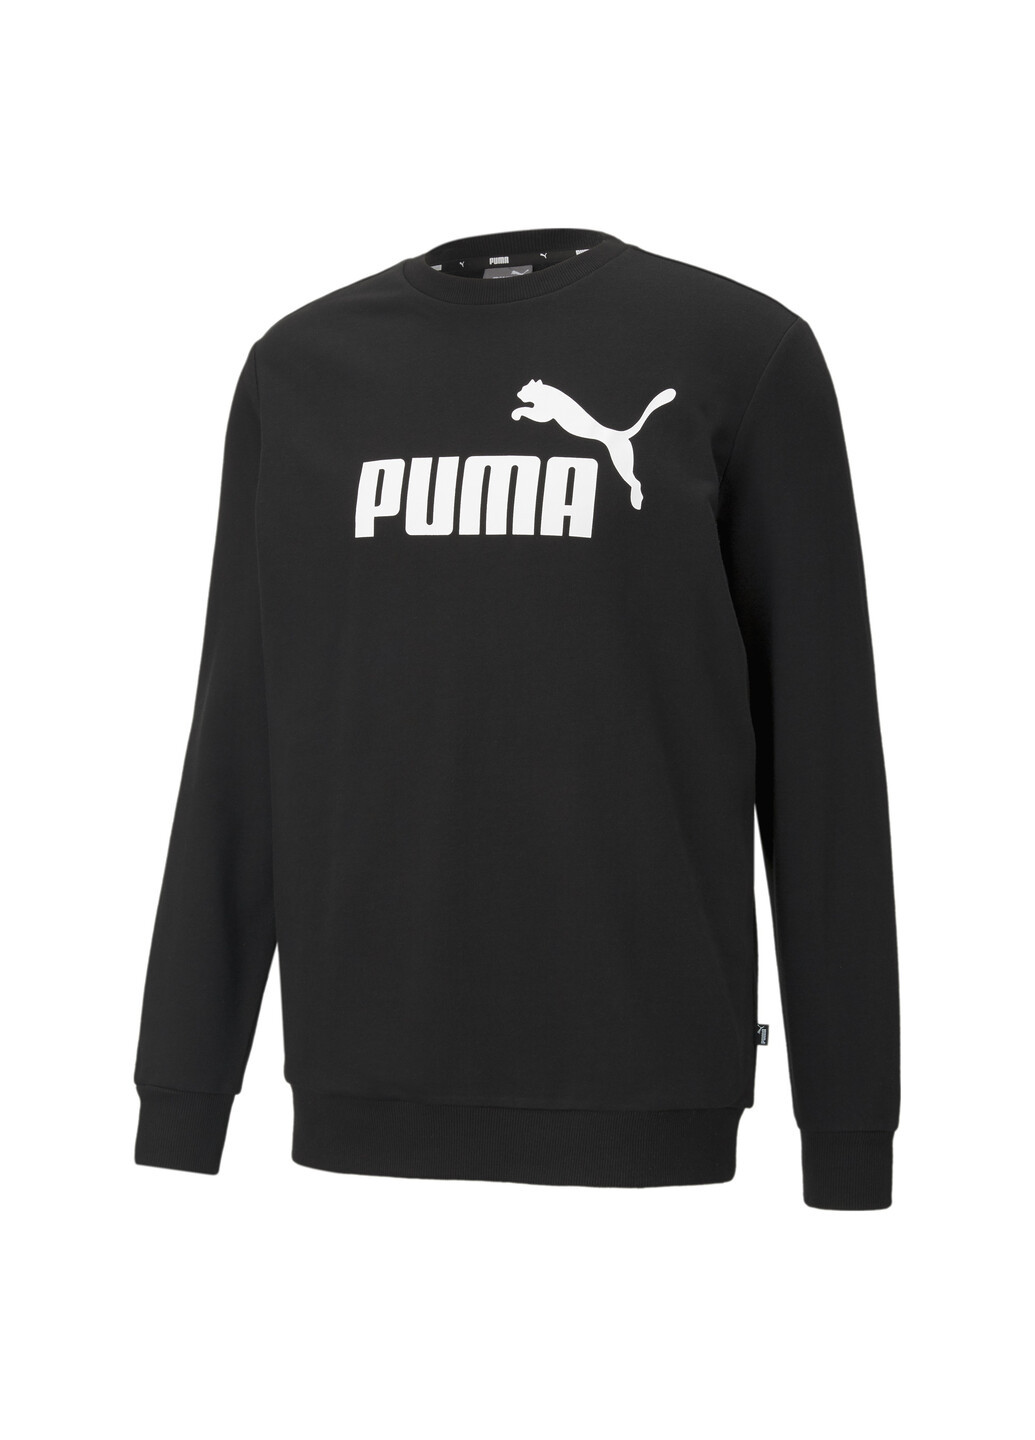 Черная демисезонная свитшот essentials big logo crew men’s sweater Puma